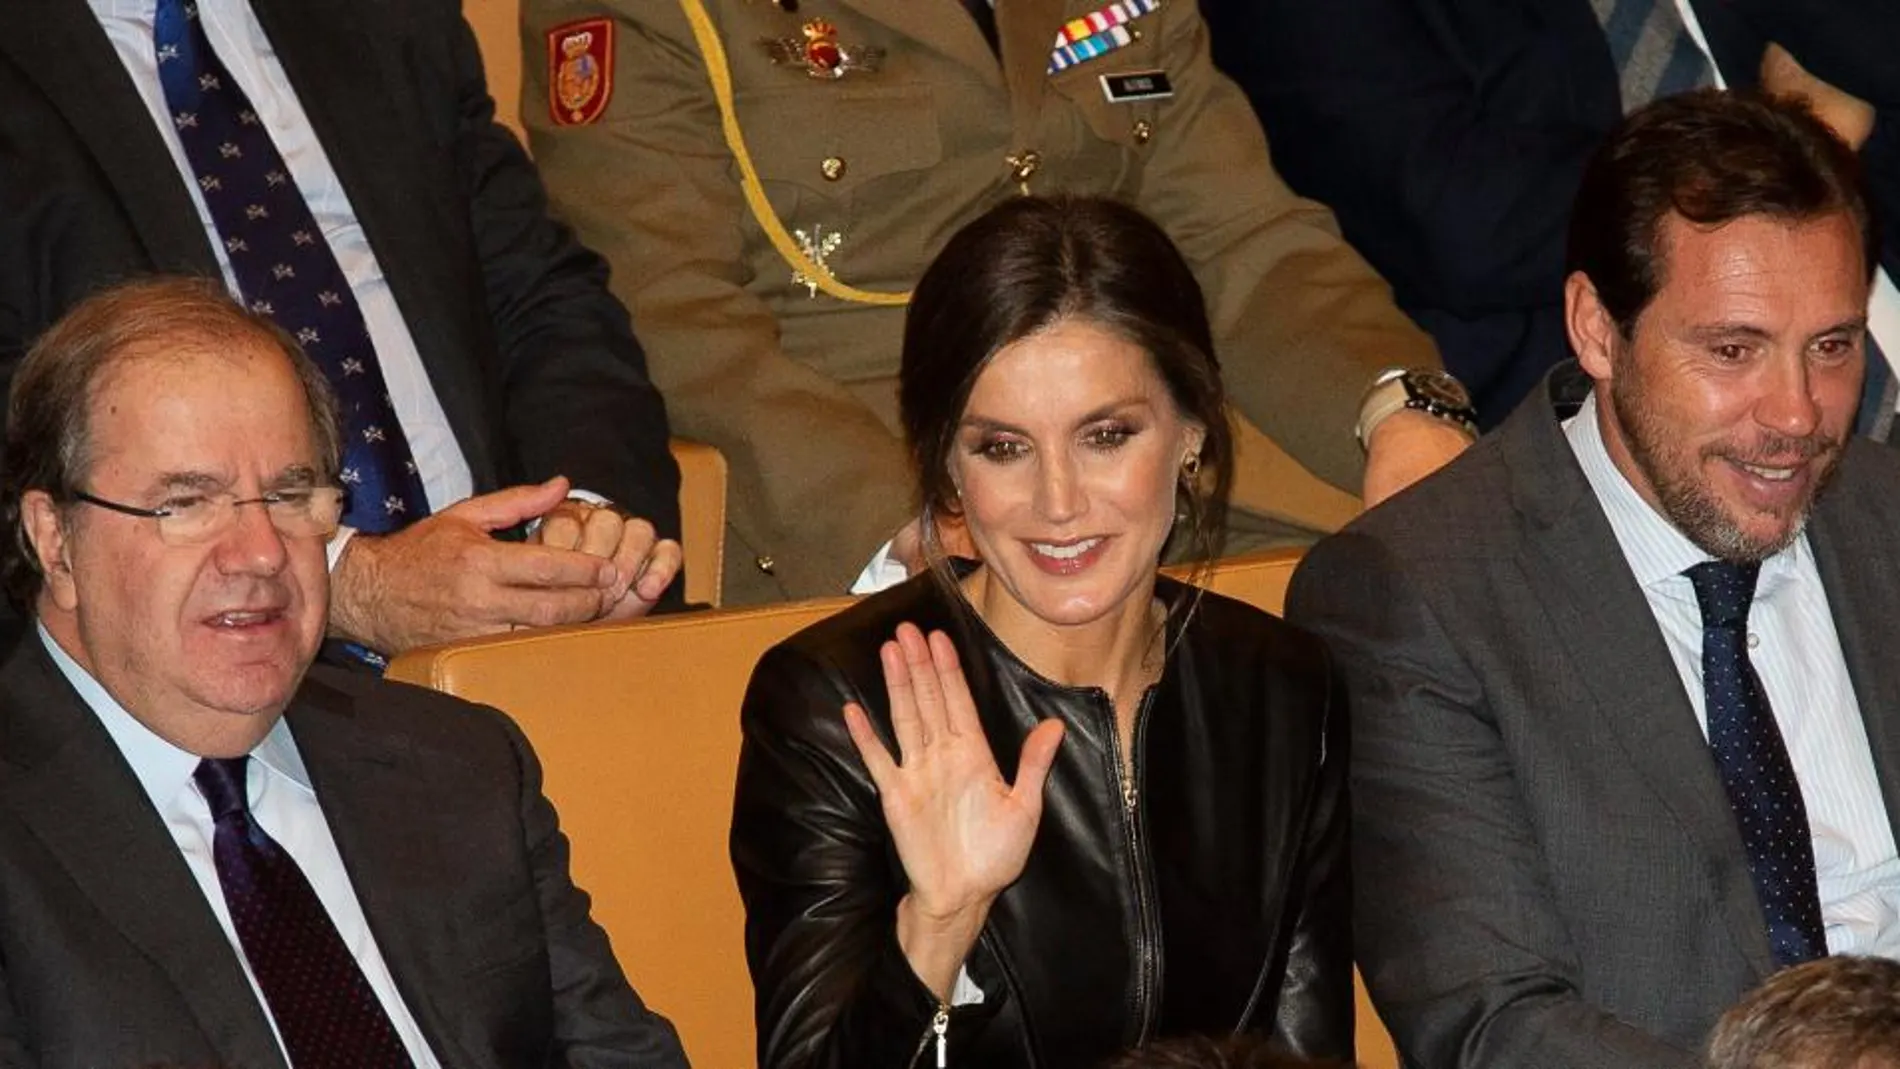 Doña Letizia, en la imagen junto al presidente Herrera y el alcalde Óscar Puente, recibió un caluroso recibimiento a su entrada en el auditorio Miguel delibes de Valladolid